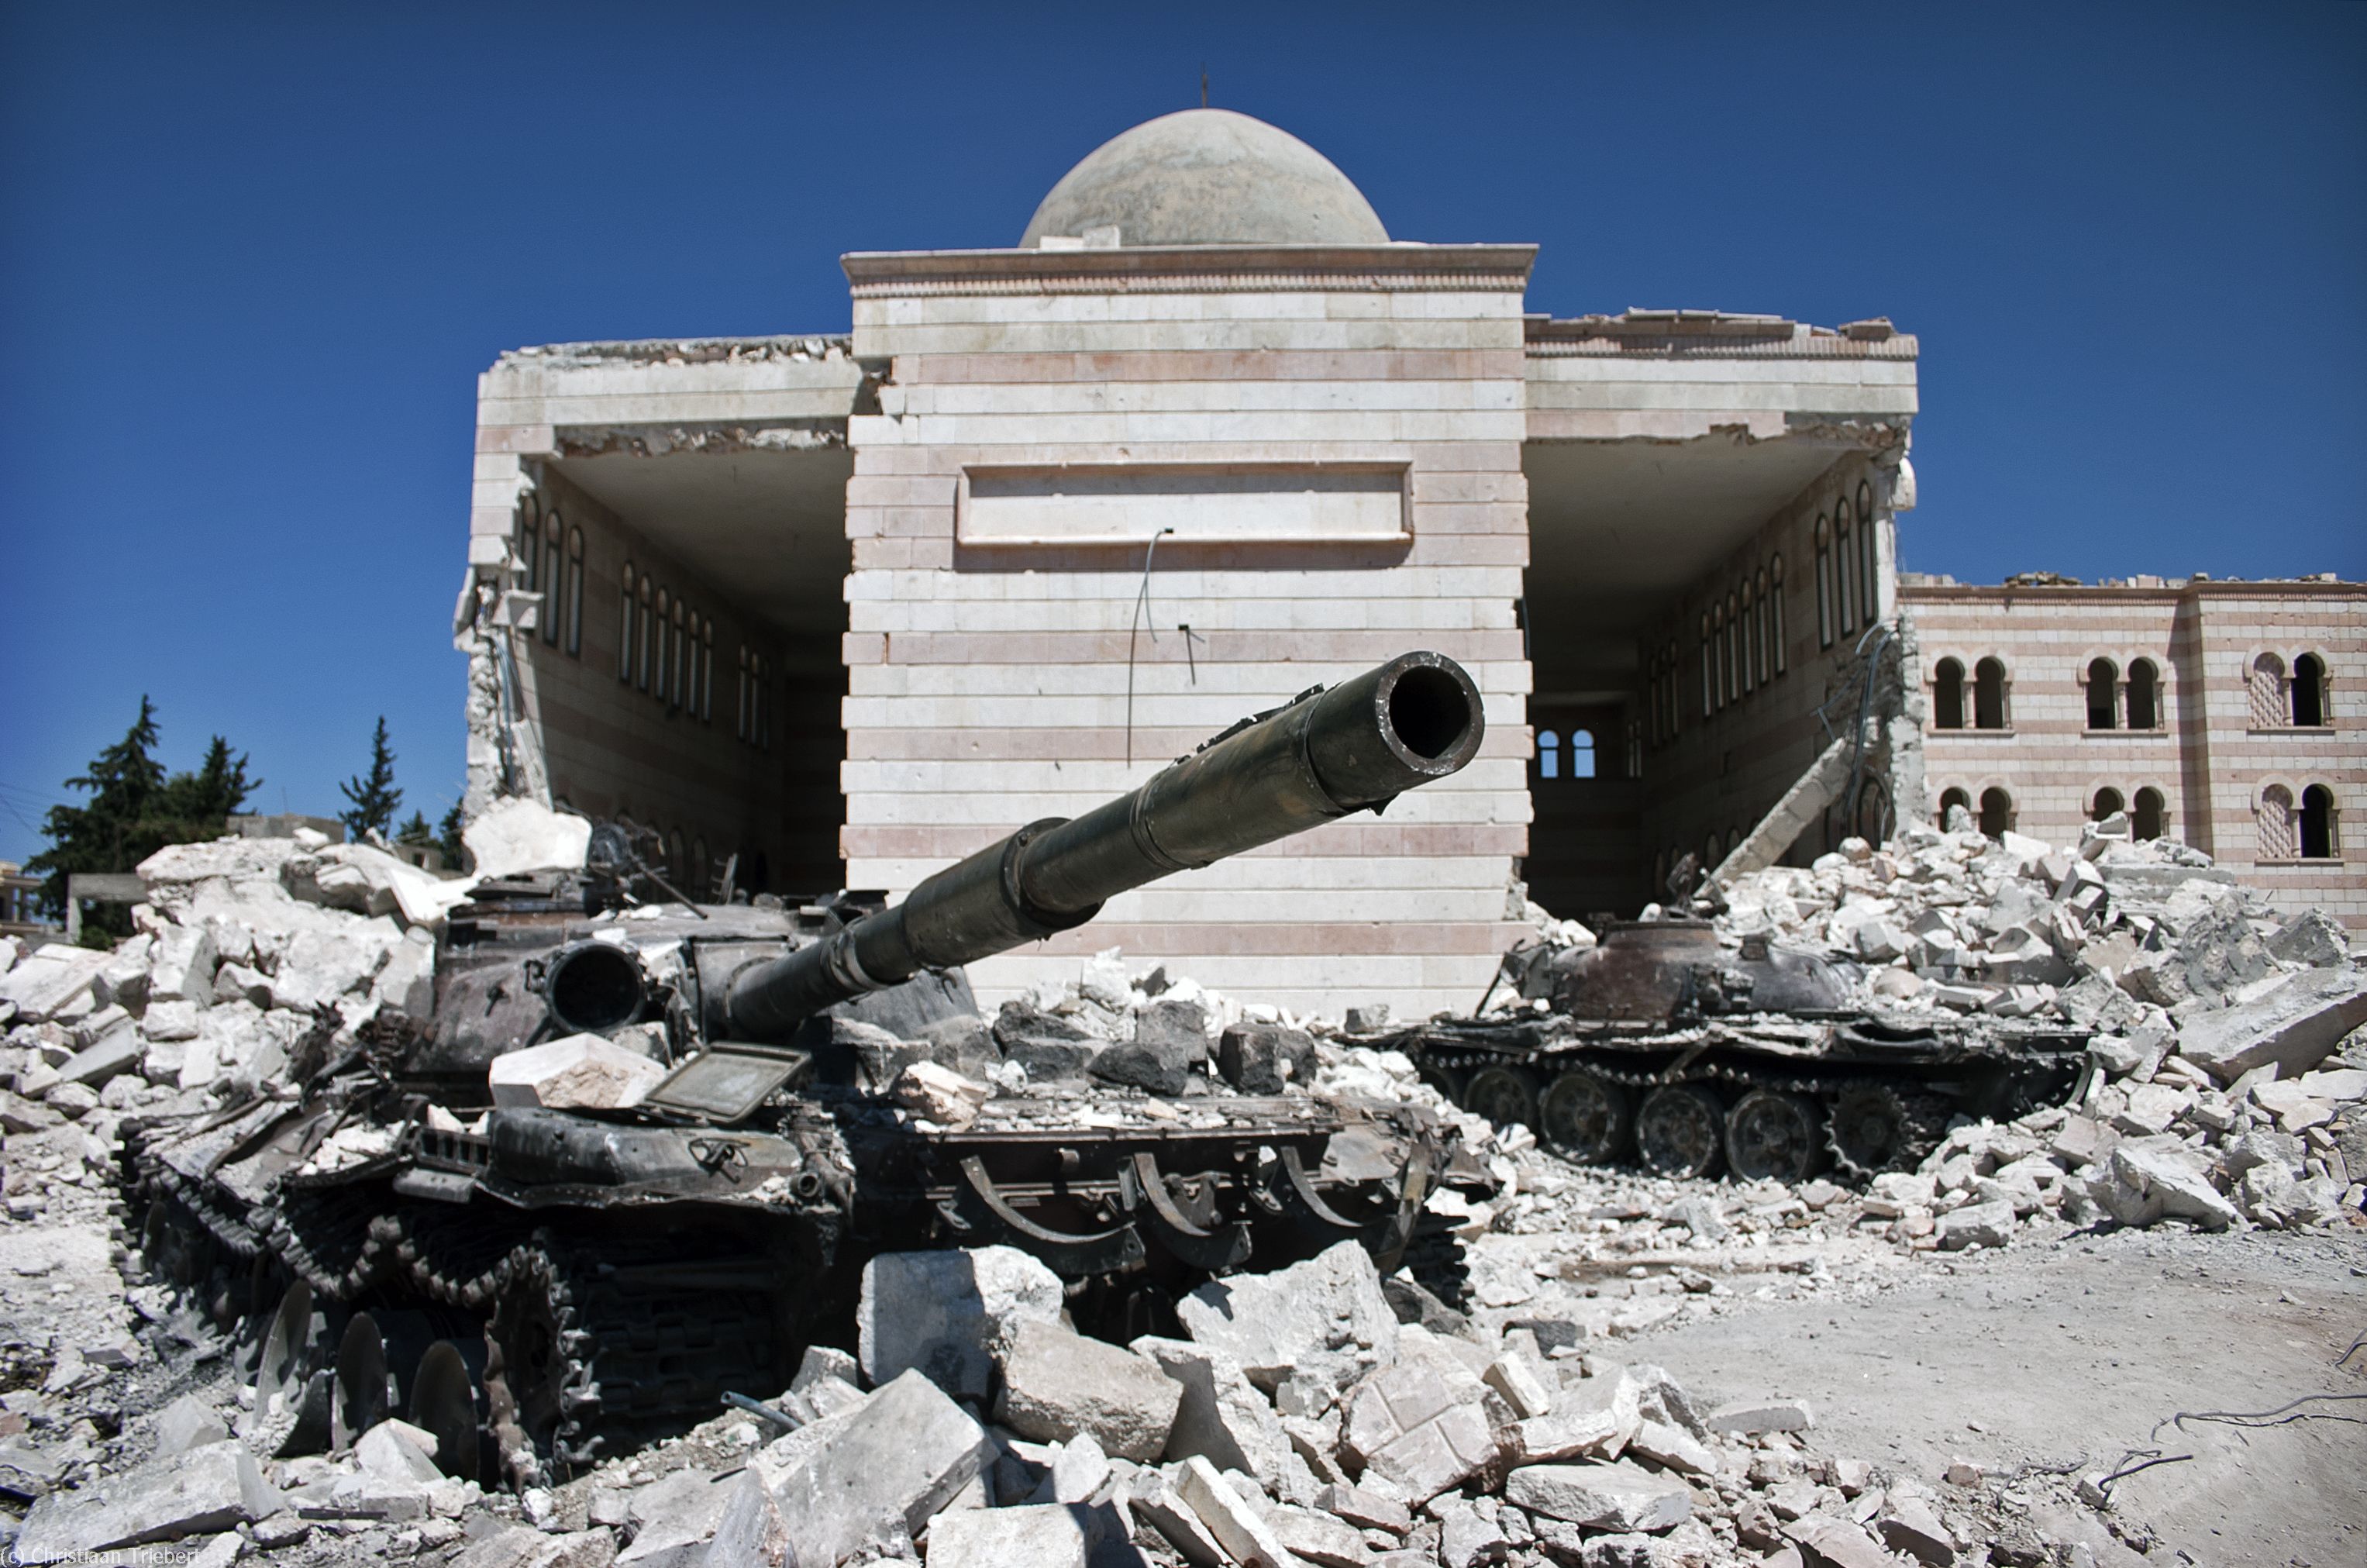 Η Μέρκελ συνεχίζει να εκβιάζει Ρωσία και ΟΗΕ για τους βομβαρδισμούς στο Χαλέπι